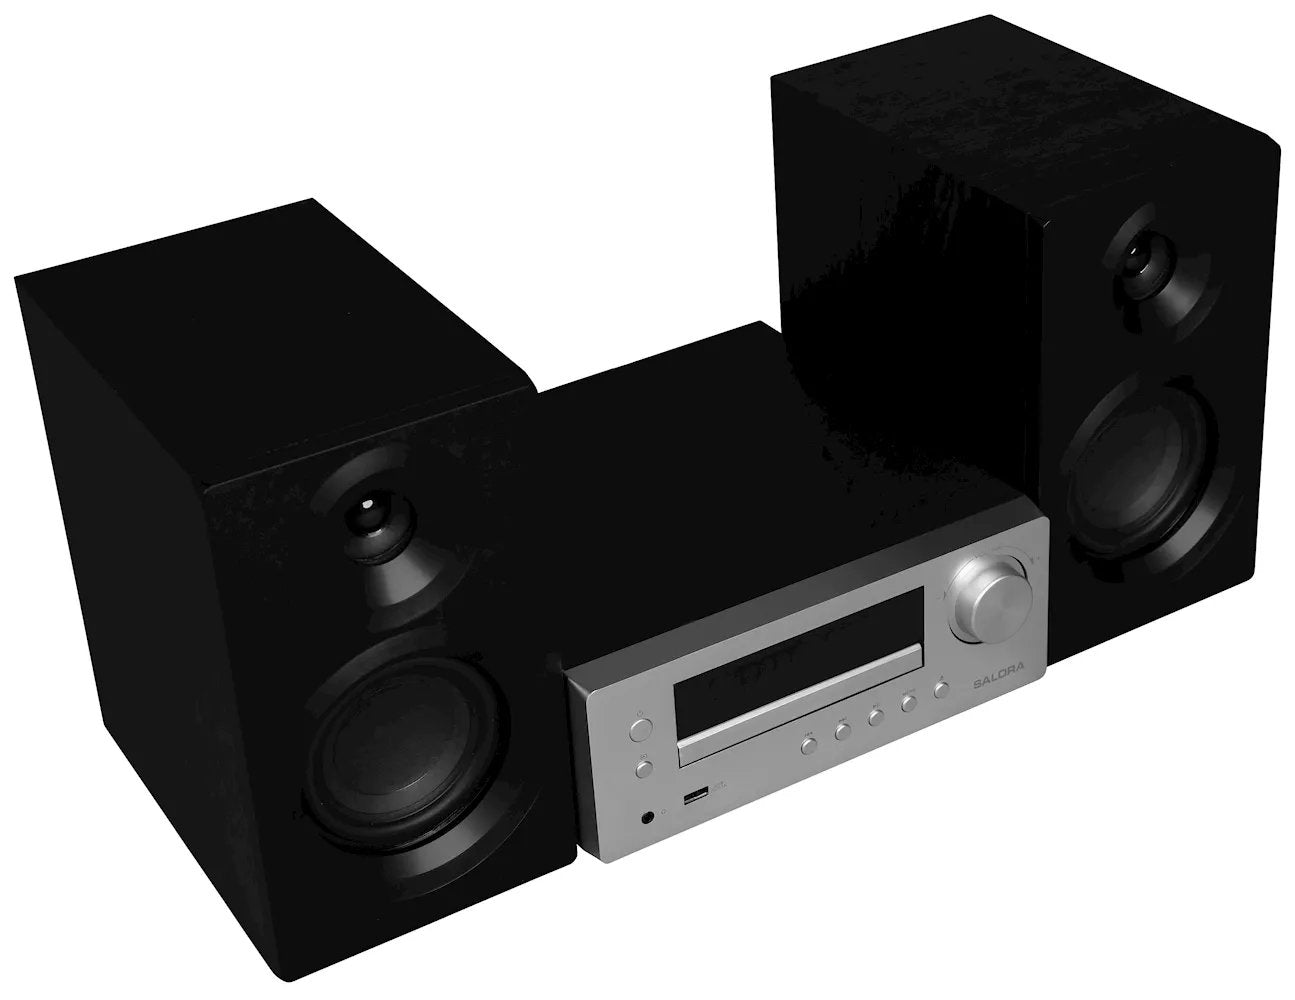 Salora MHS550 stereo microset met DAB+ radio en CD speler ingebouwd